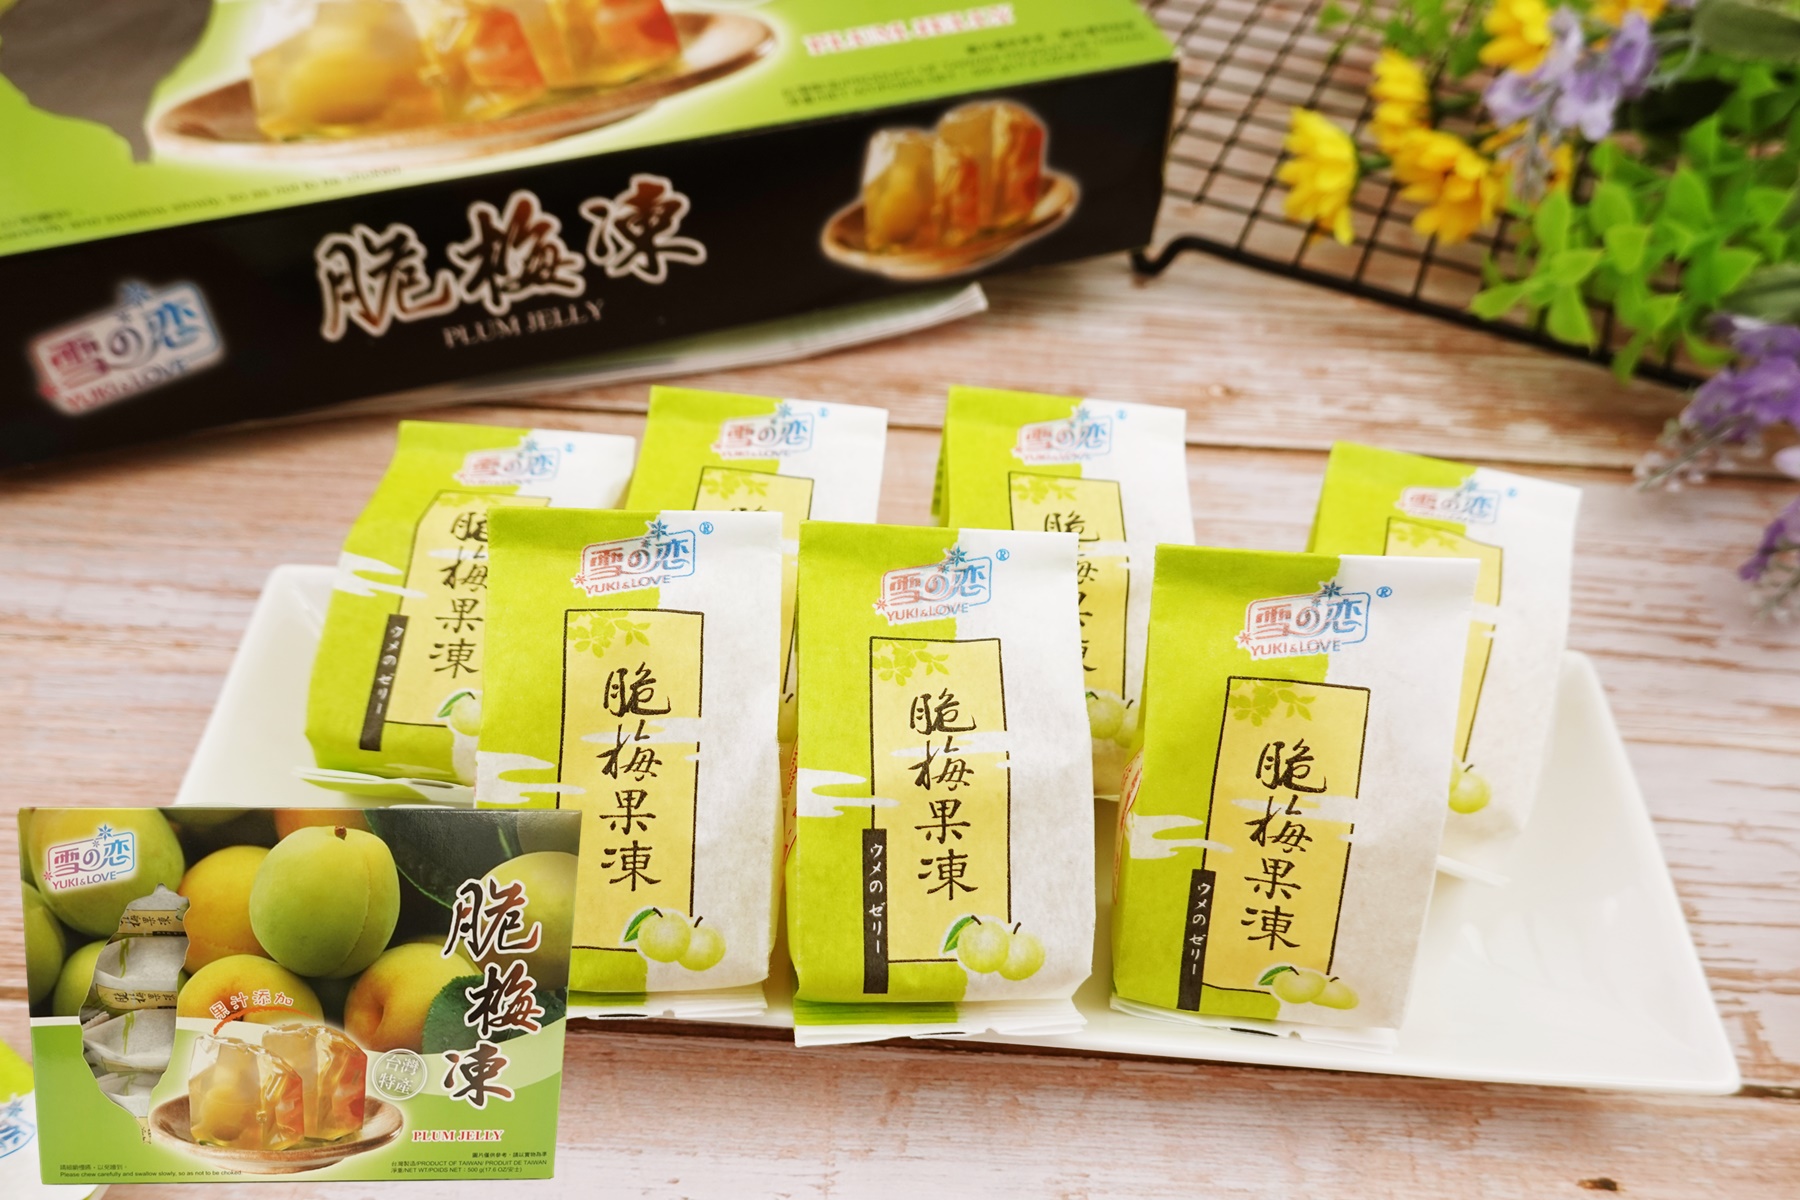 【雪之戀】水果梅子風味果凍(8~10入/盒) 10種口味任選 酸甜滑嫩